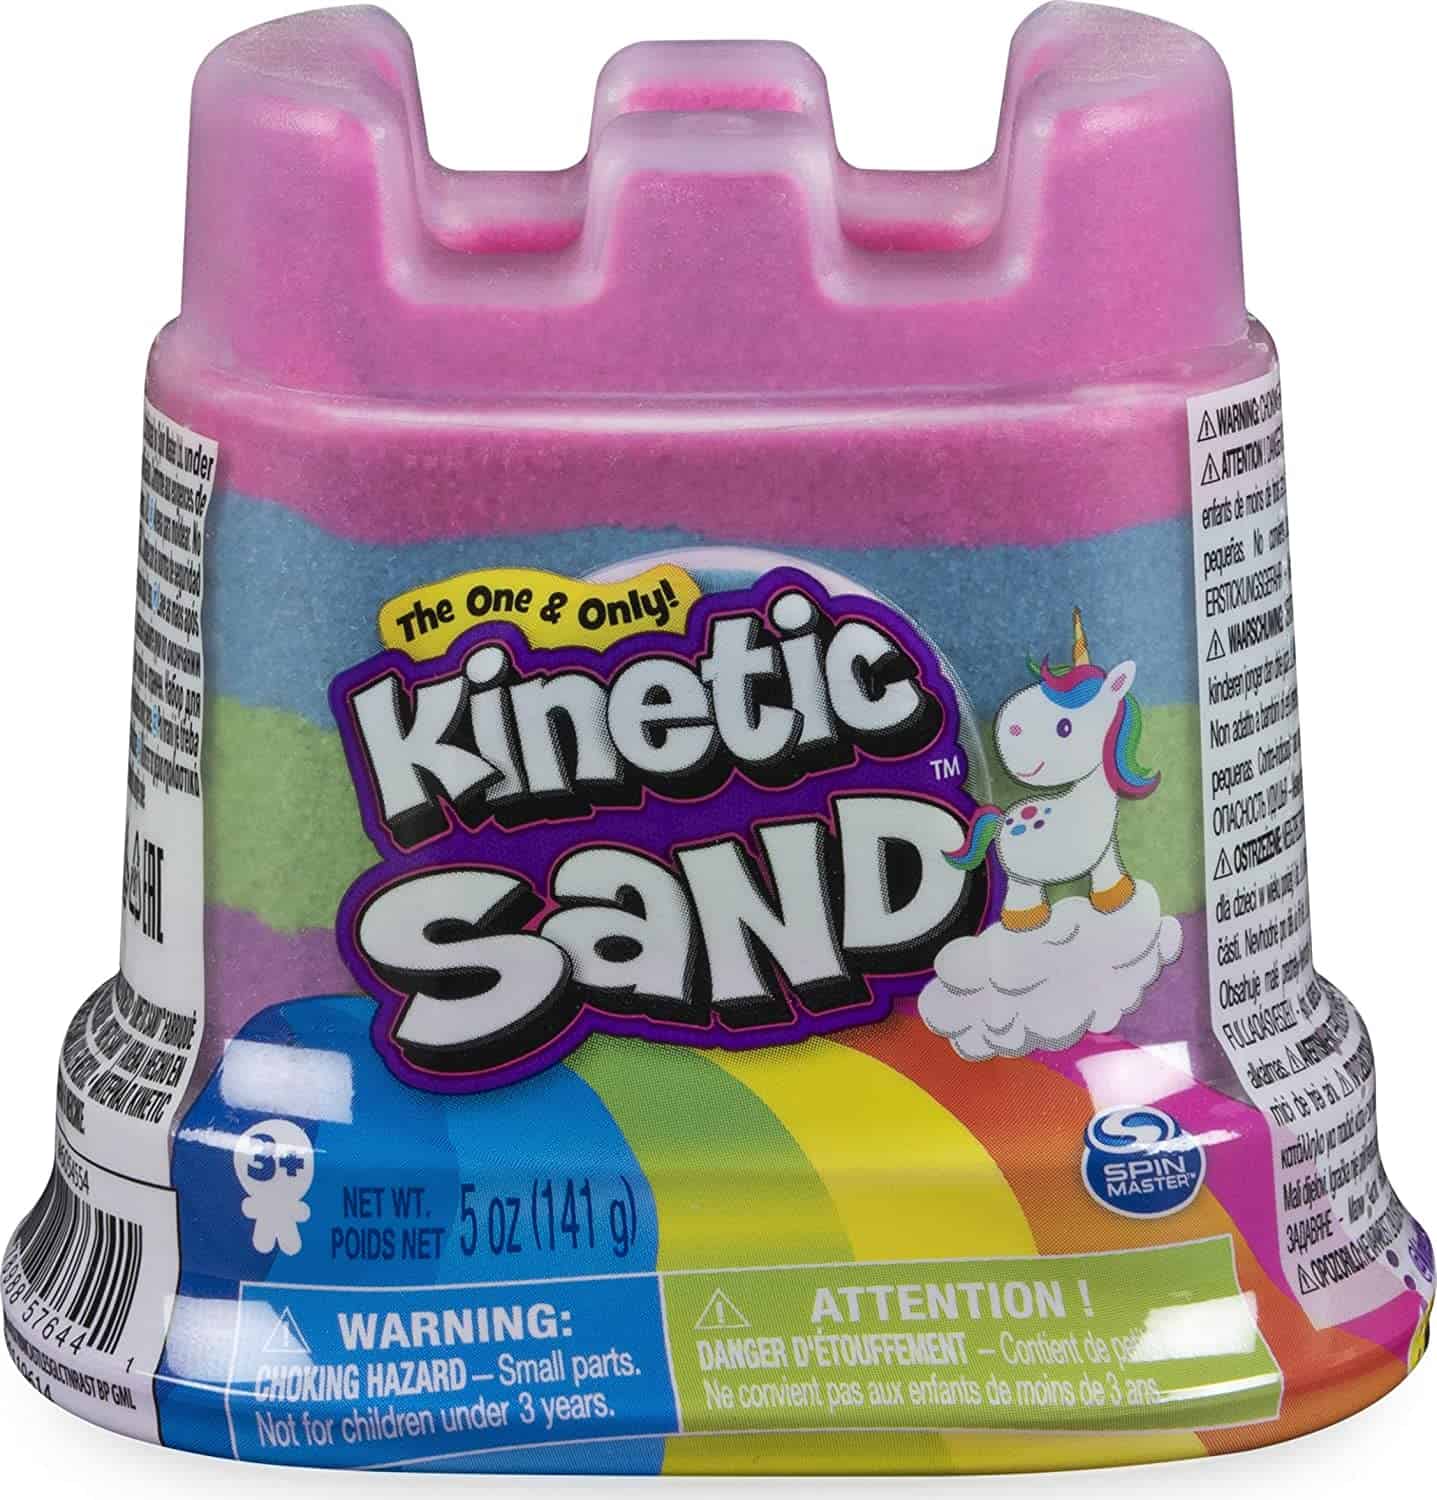 Kinetic Sand met kleuren van de regenboog en eenhoorn thema